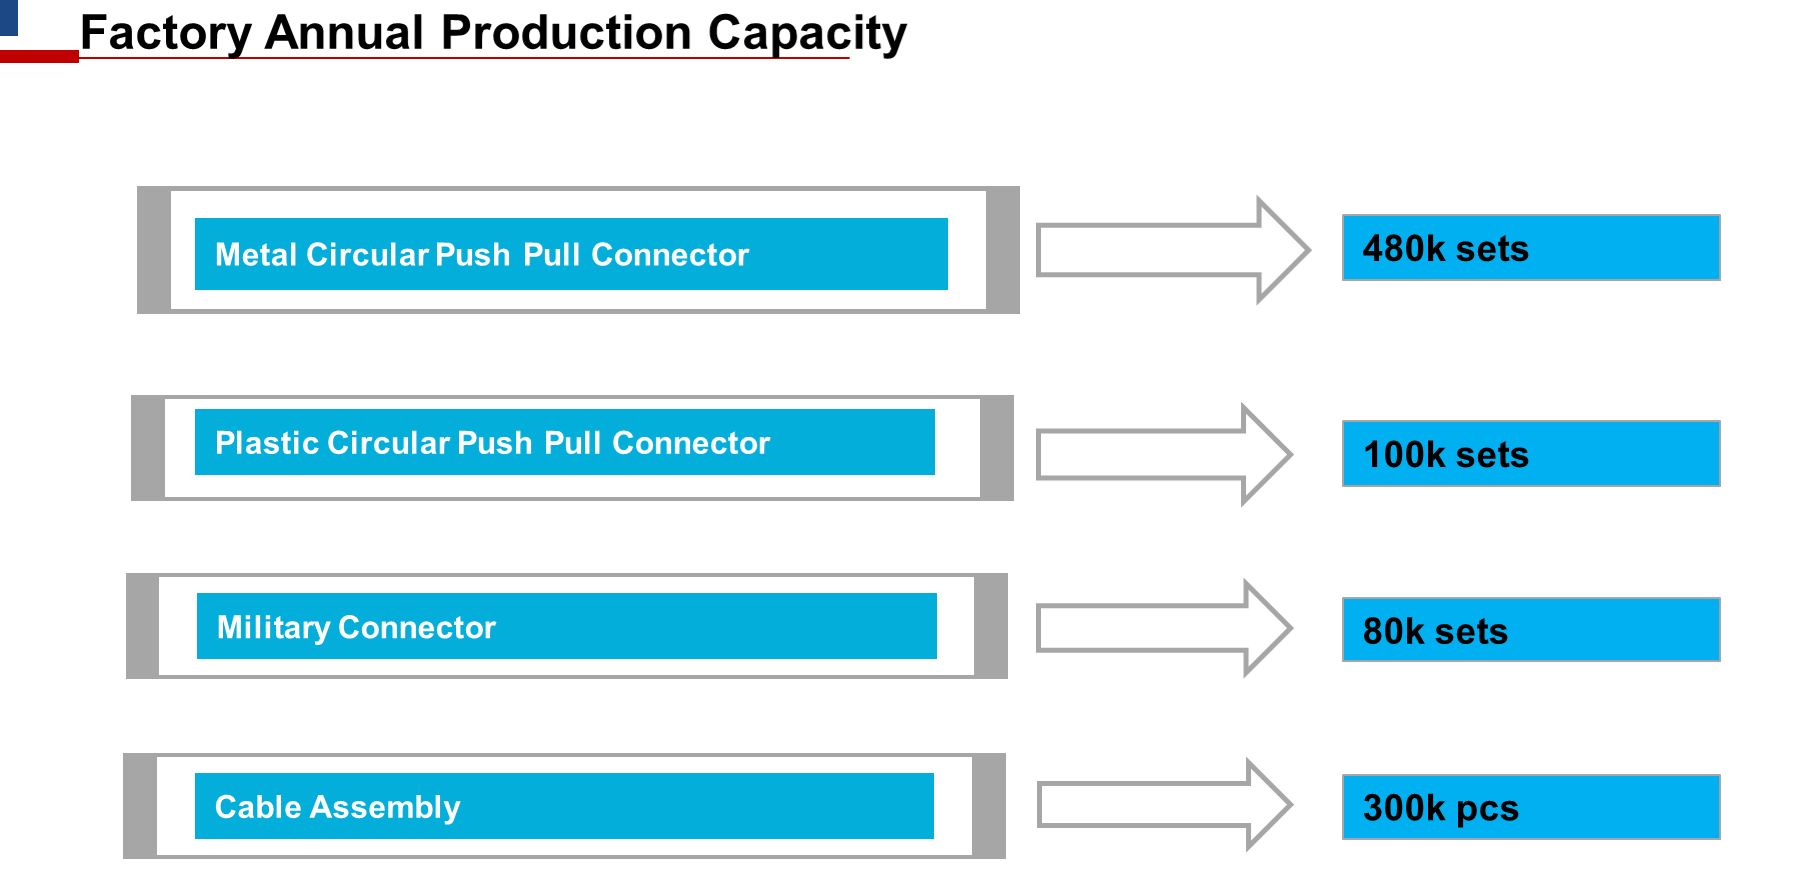 Production capacity